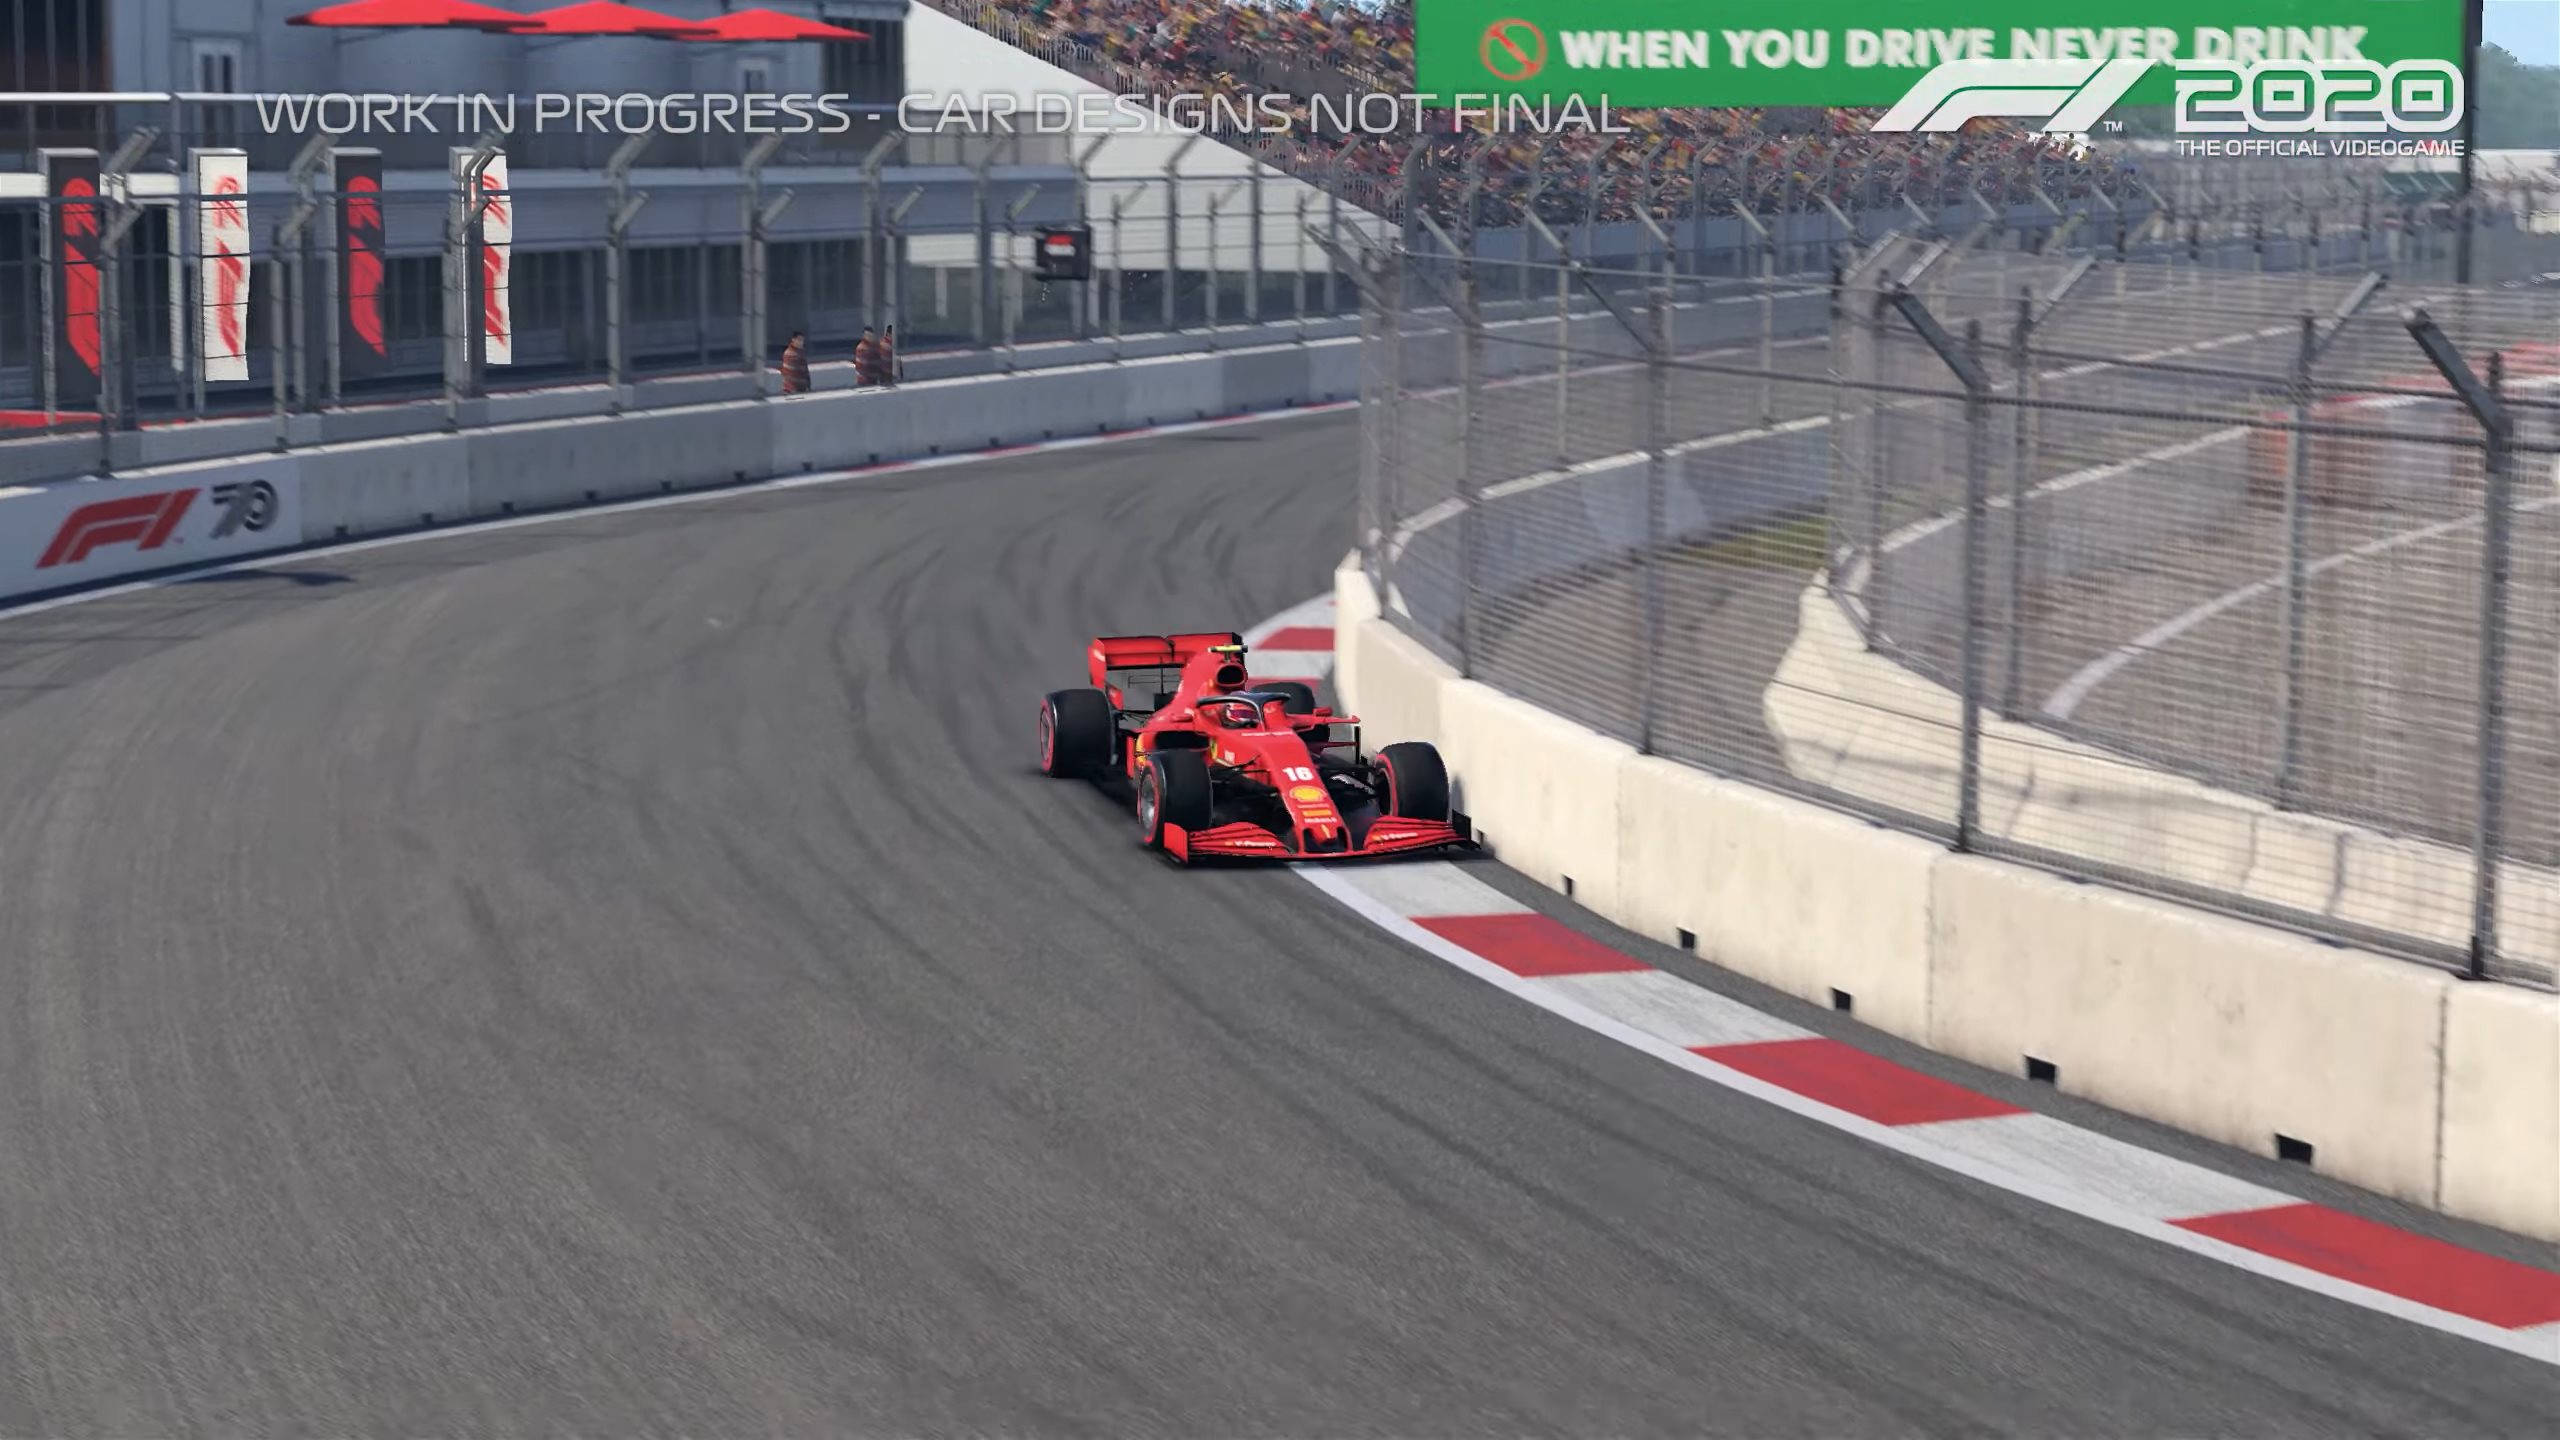 《F1 2020》河内赛道单圈演示 第一人称极速体验